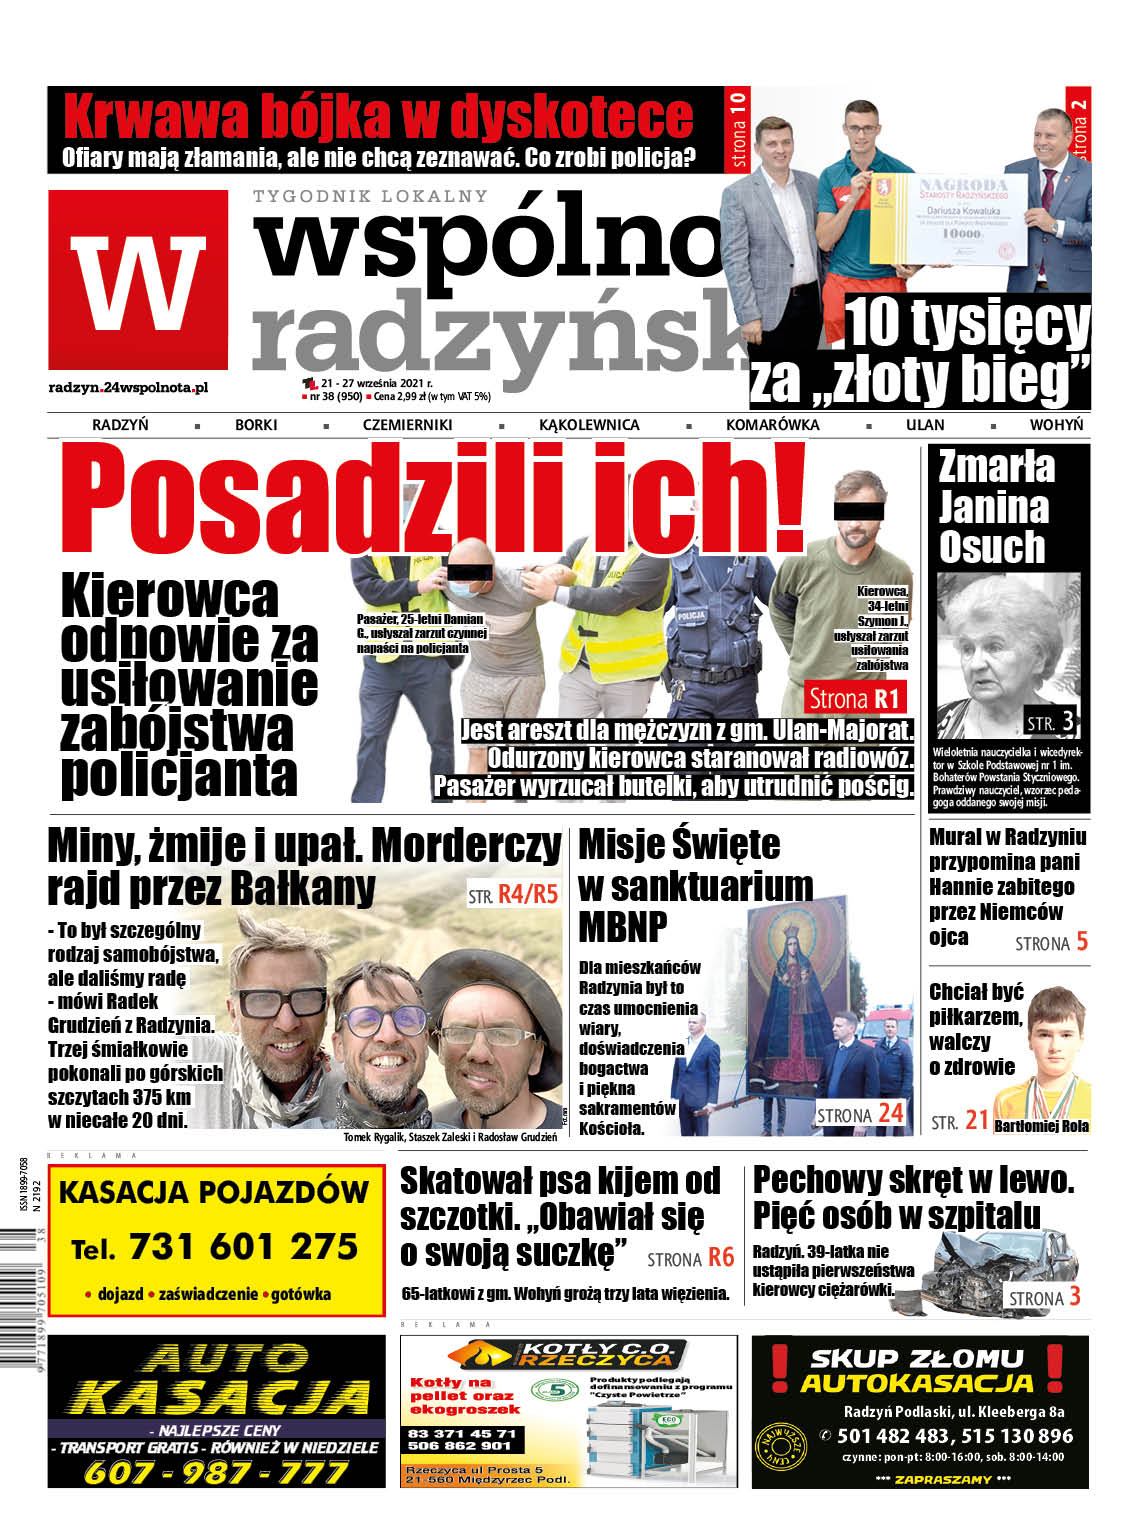 Najnowszy numer Wspólnoty Radzyńskiej - Zdjęcie główne